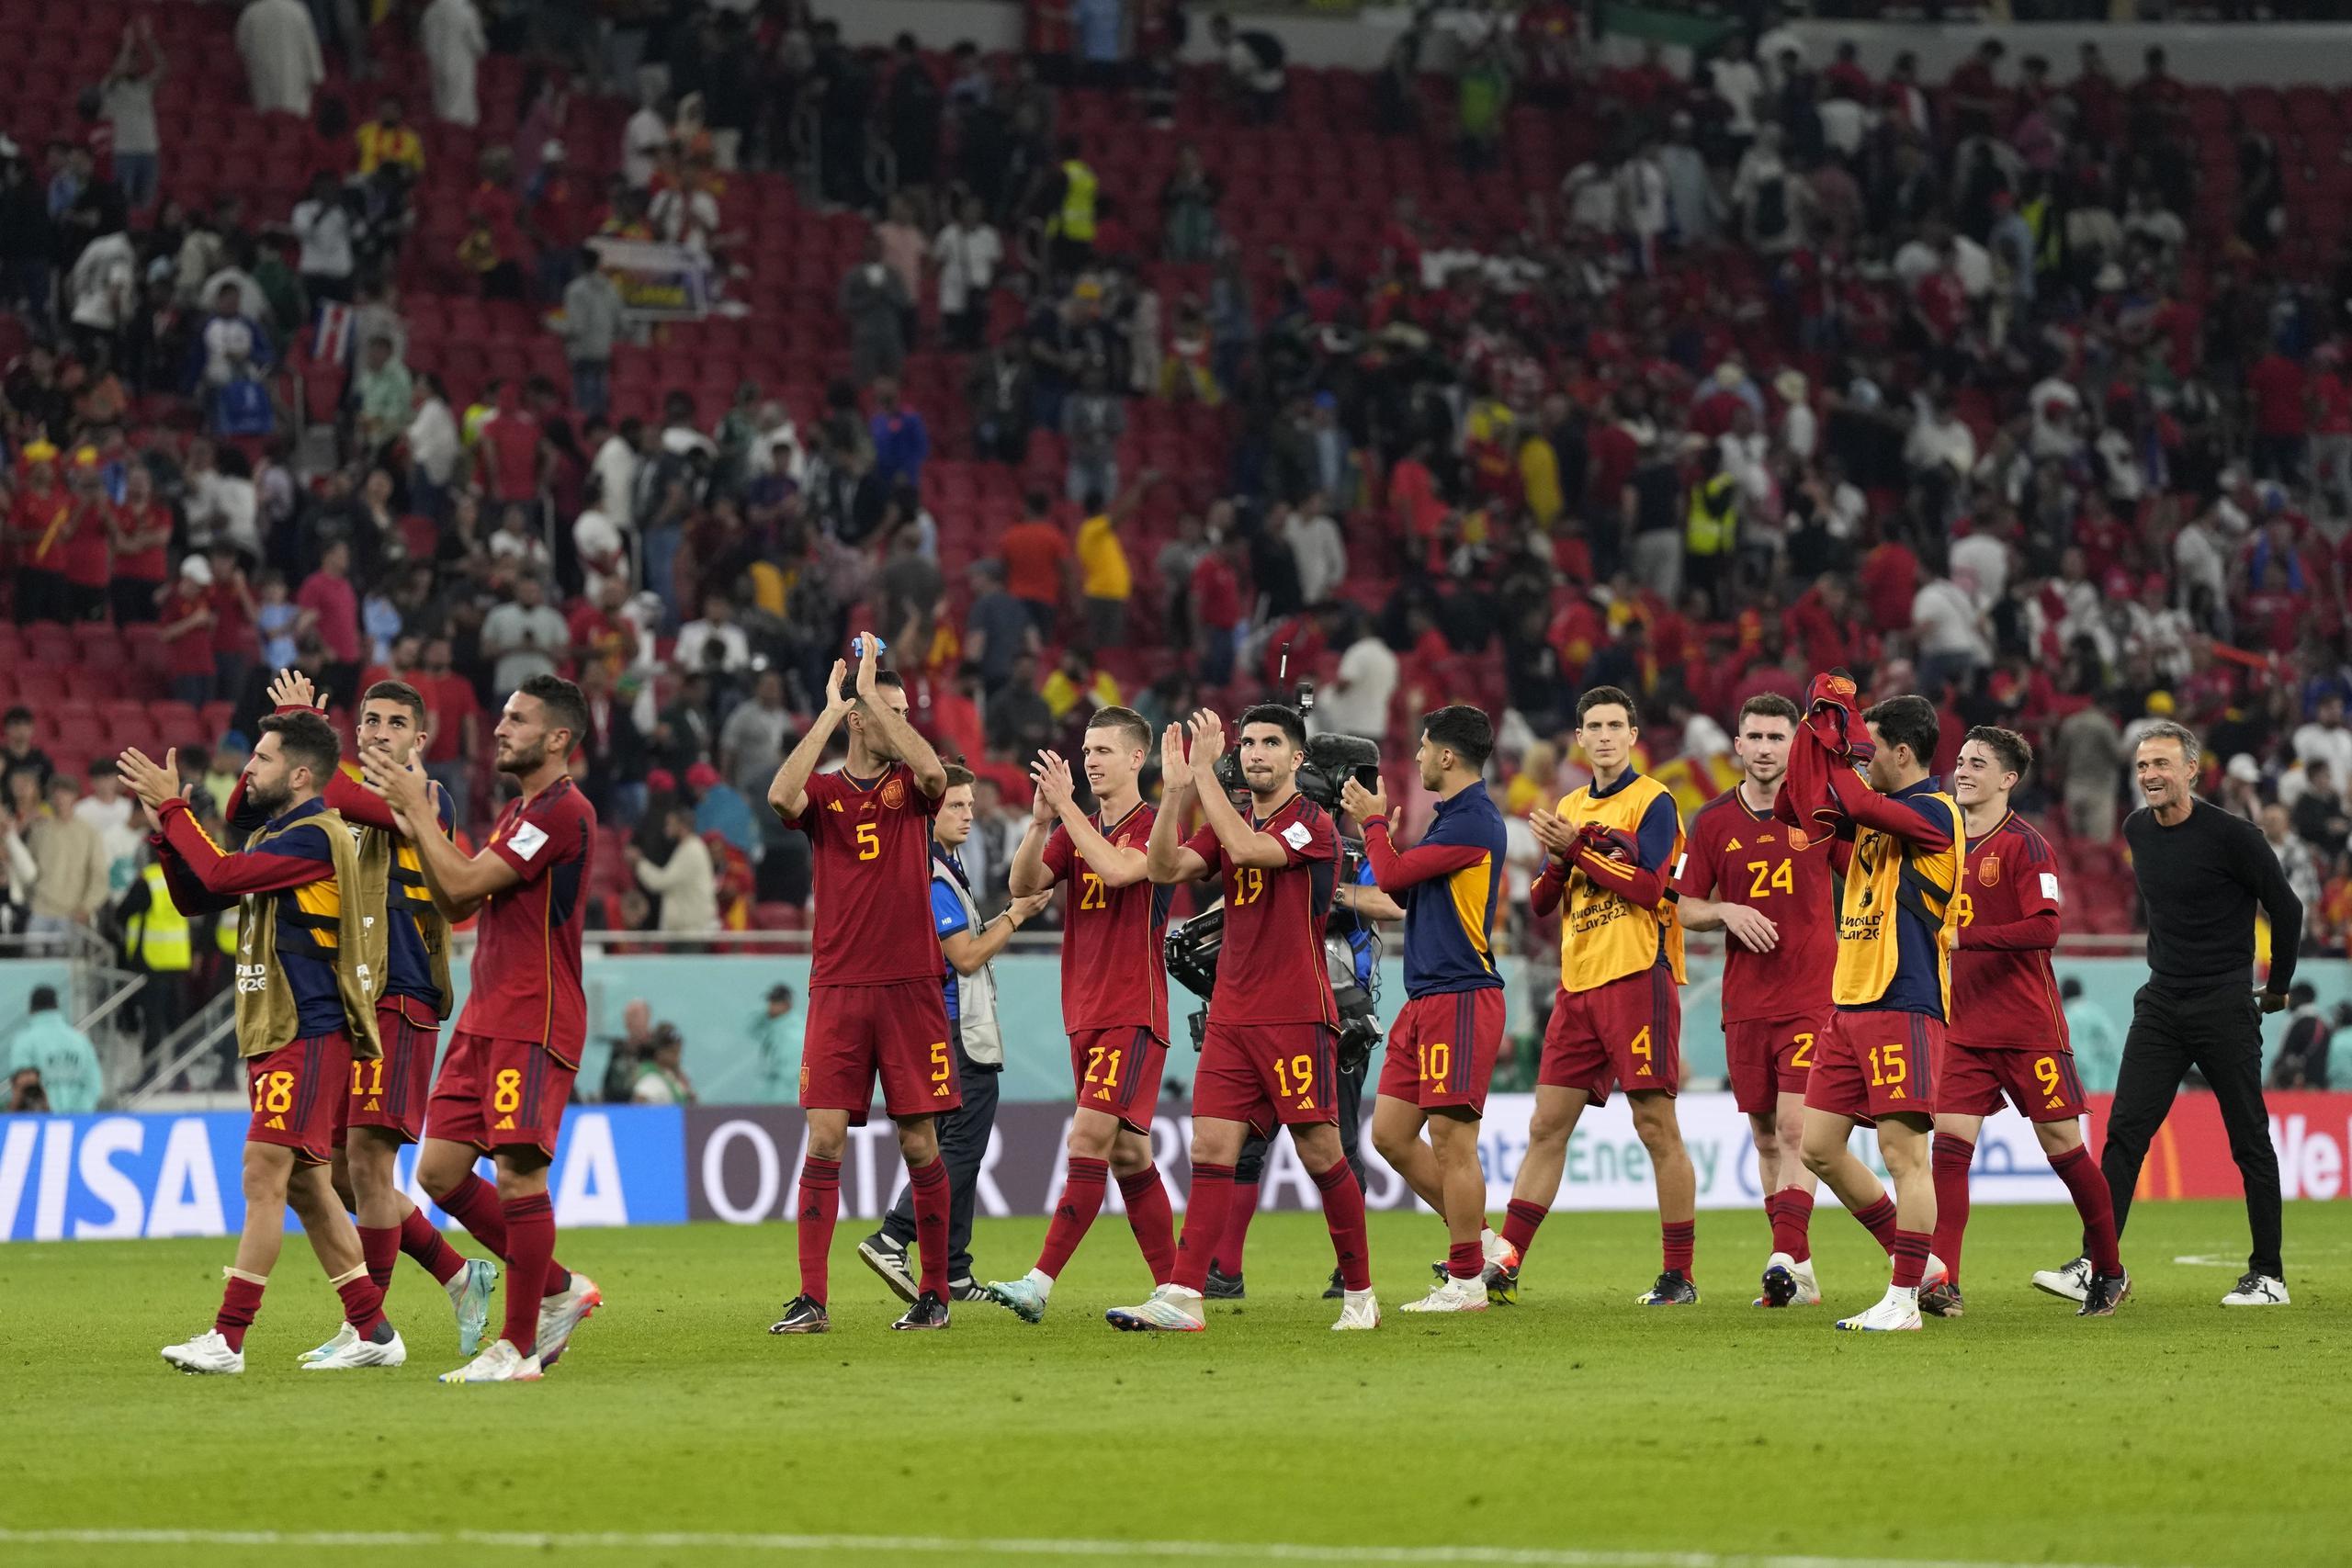 La selección española llega al duelo del domingo contra Alemania tras conseguir  un 7-0 sobre Costa Rica en su primer partido en Qatar 2022. Alemania perdió ante Japón.